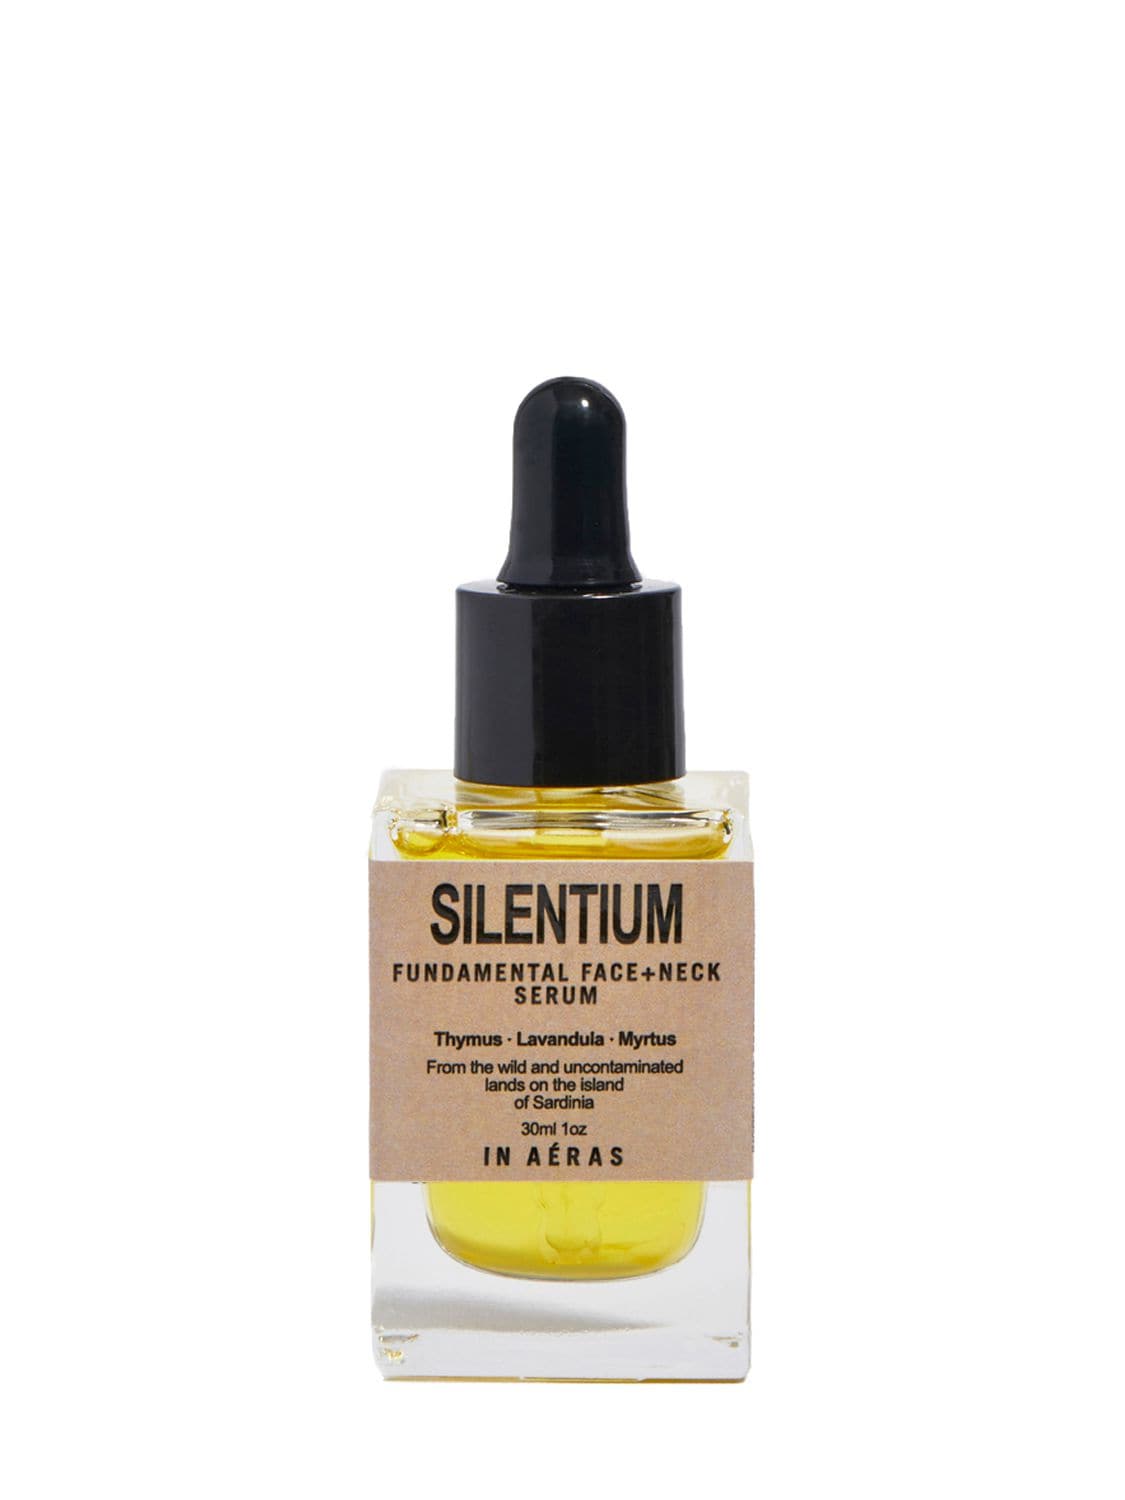 Image of Silentium Fundamental Face+neck Serum